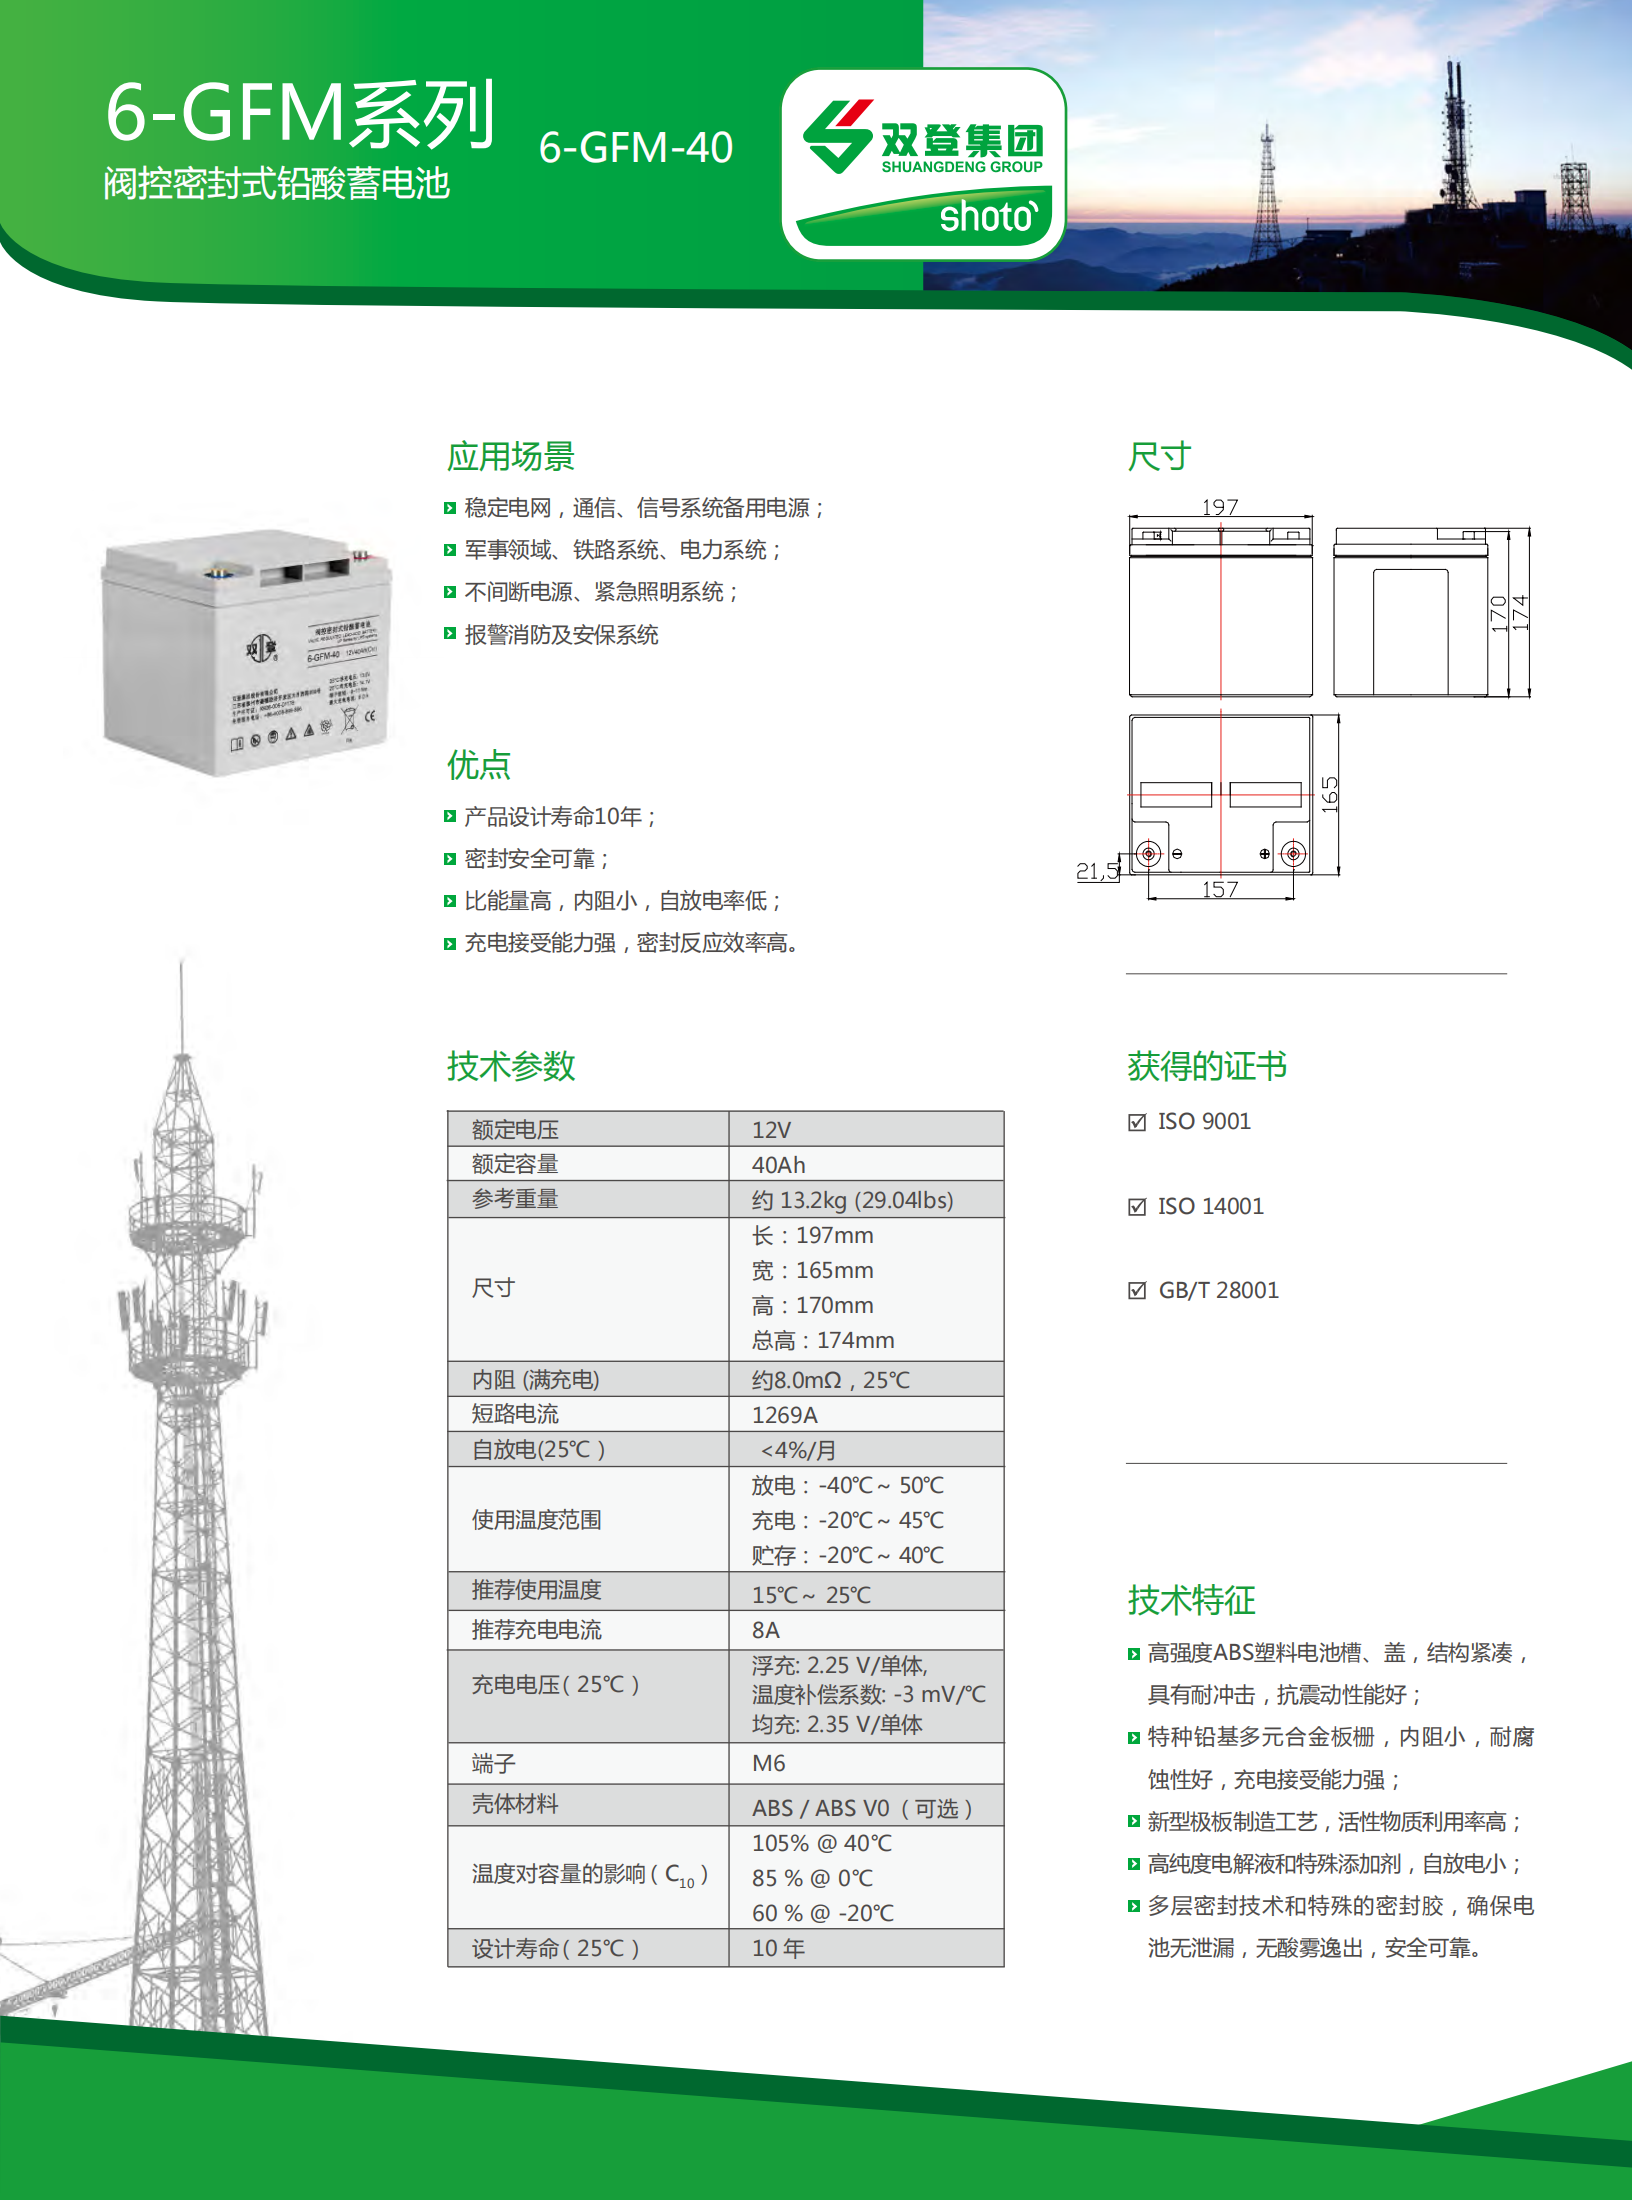 6-GFM-40(中文版) (2)_00.png